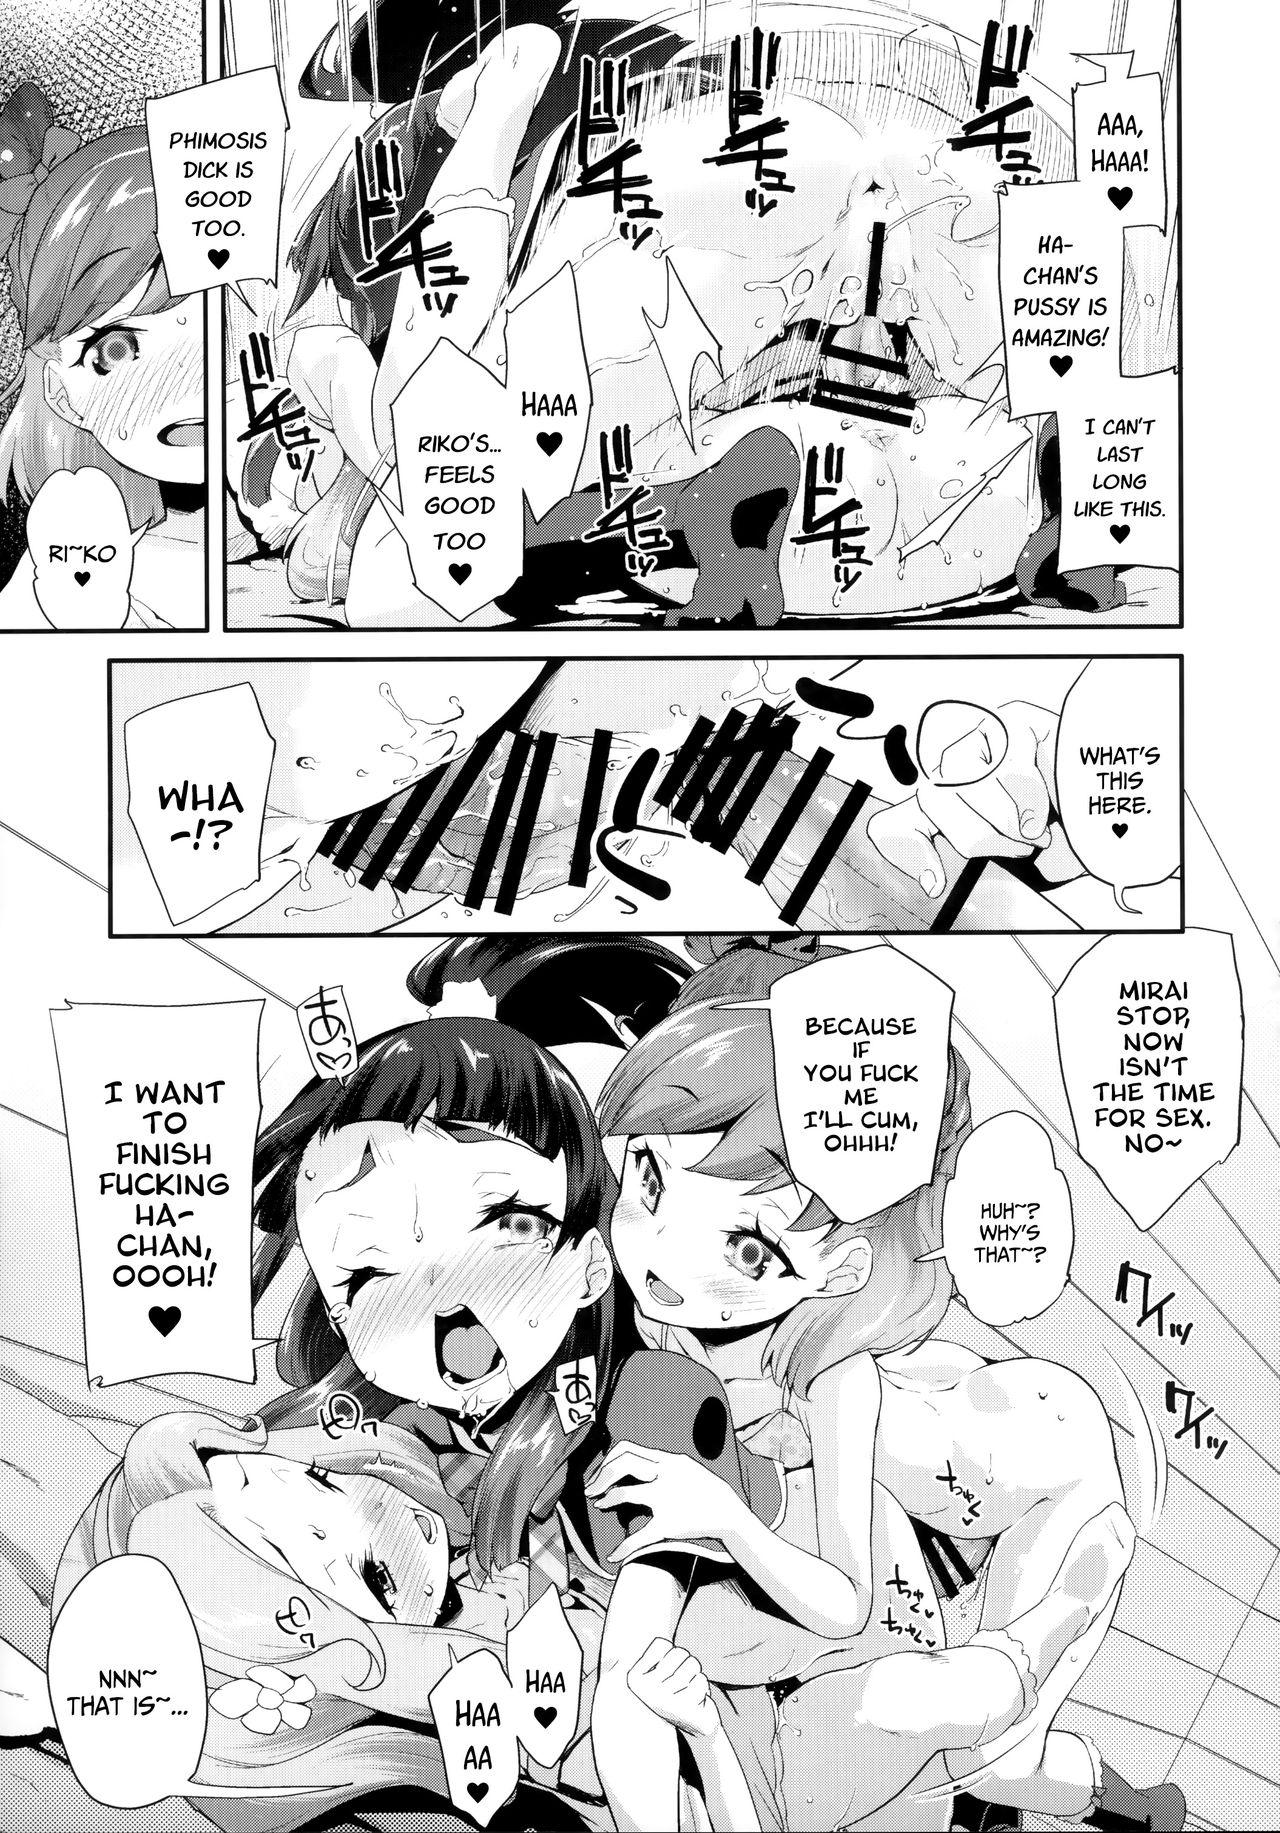 Buceta Cure Up Ra Pa Pa! Ha-chan no Noumiso Kowarechae! - Maho girls precure Messy - Page 12